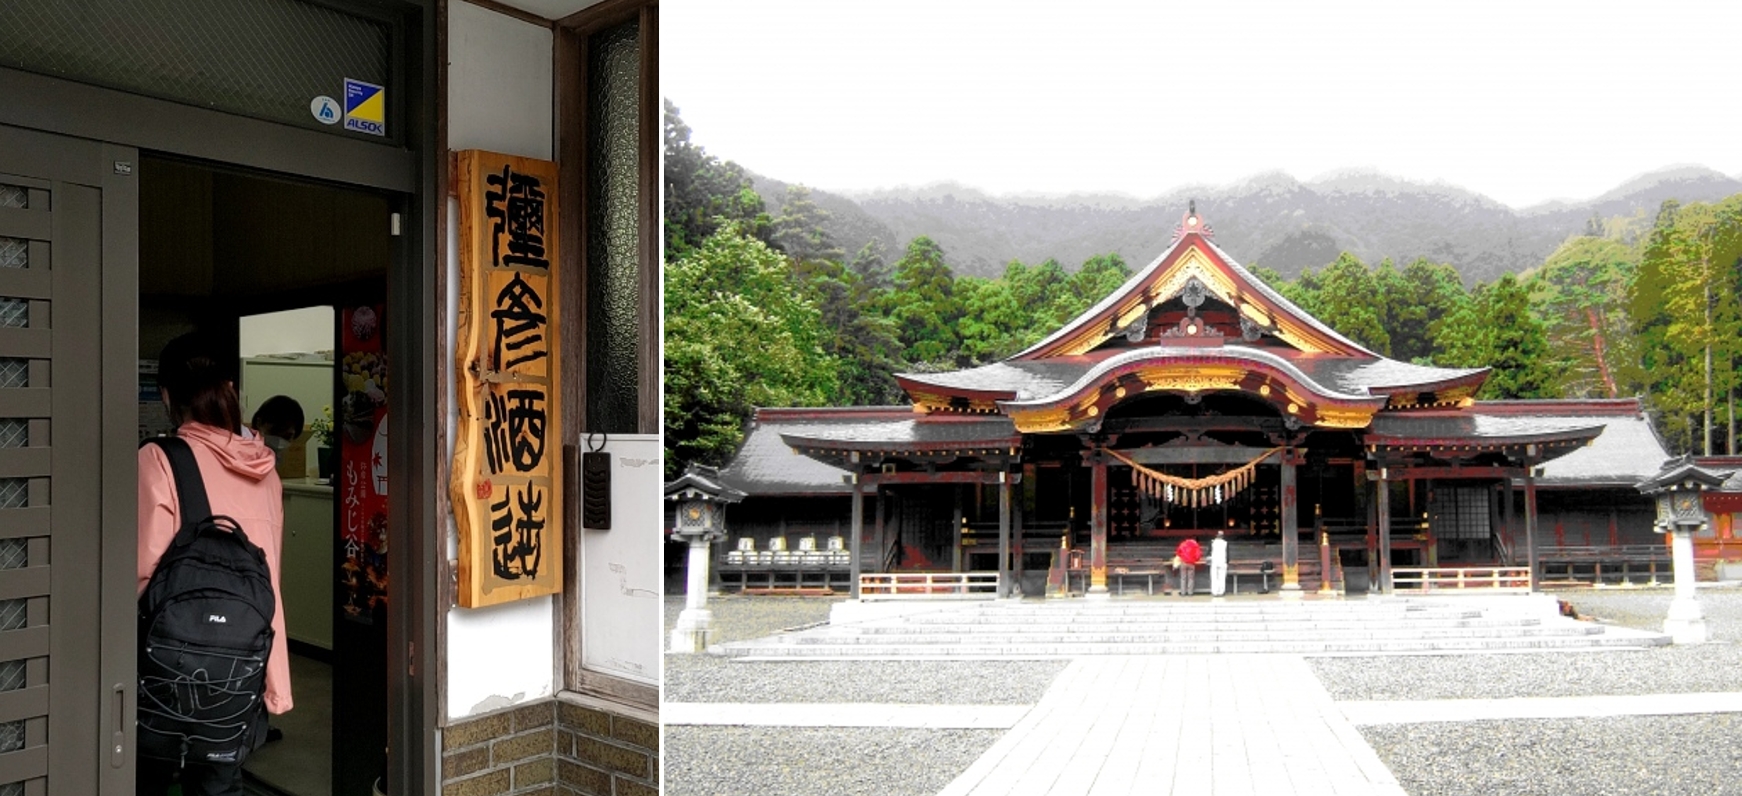 弥彦酒造と神社.JPG (770 KB)